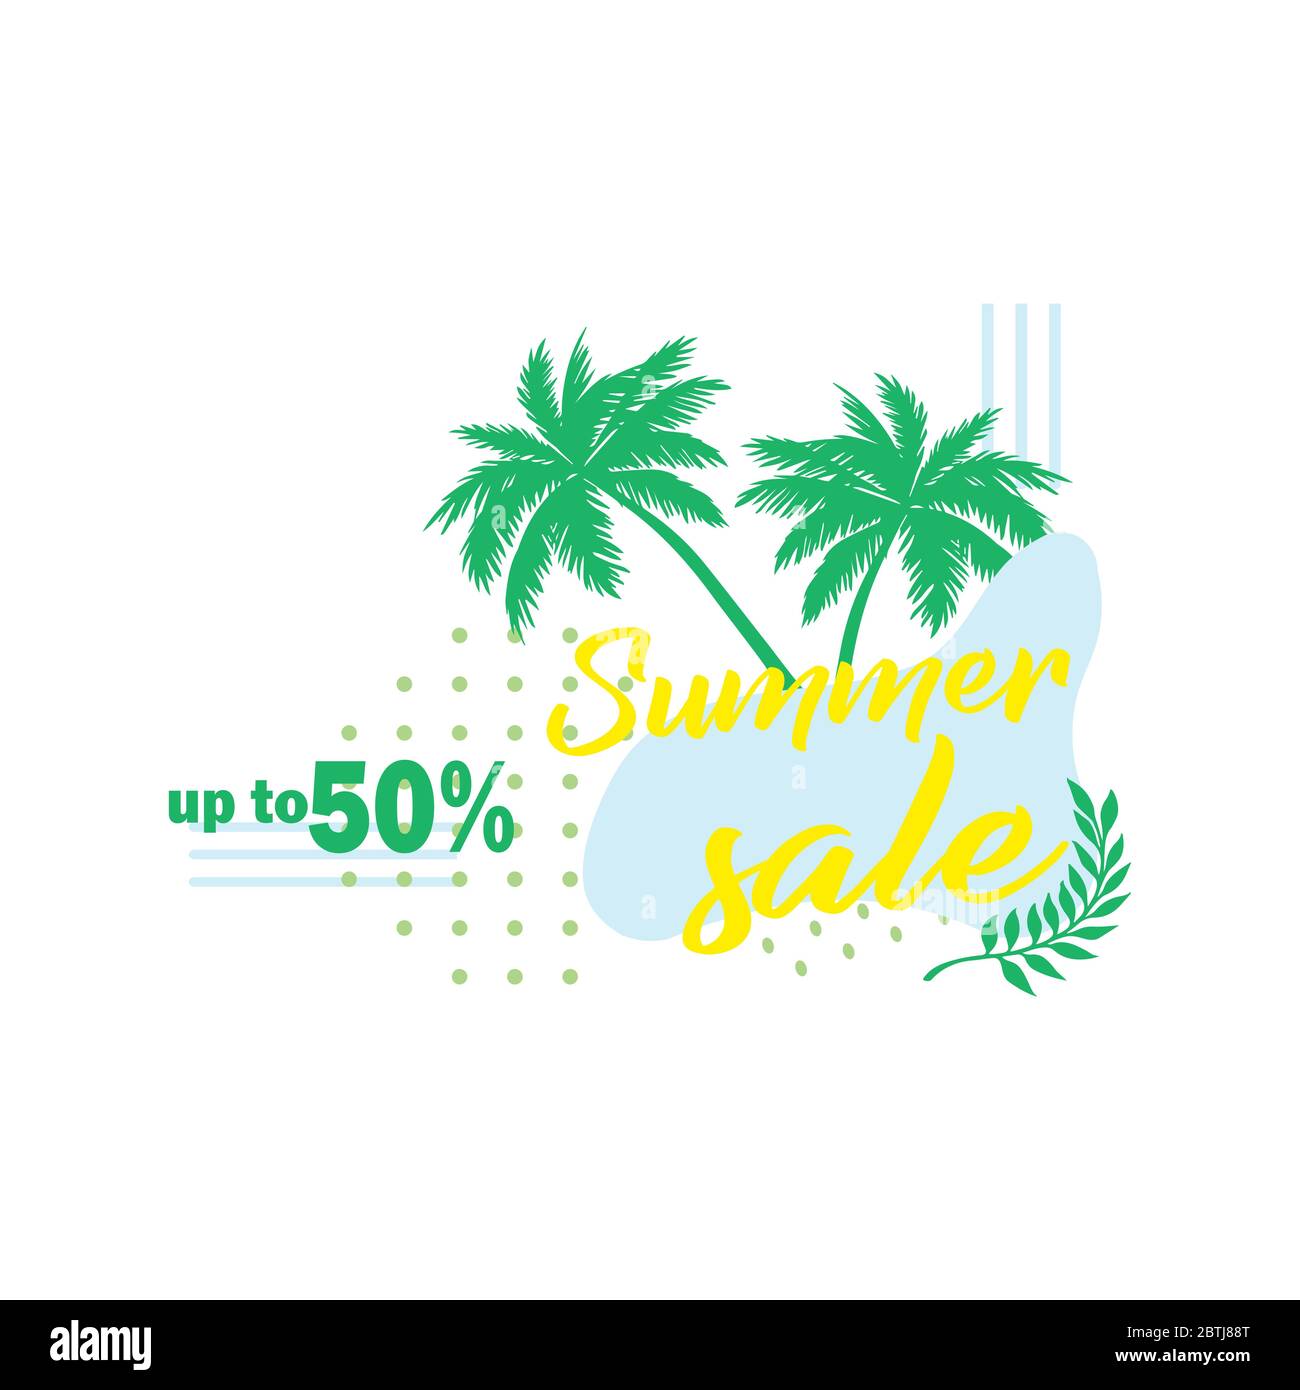 Palmblatt. Sommerangebot bis zu 50 % Rabatt. Web-Banner oder Poster für E-Commerce, Online-Kosmetik-Shop Stock Vektor